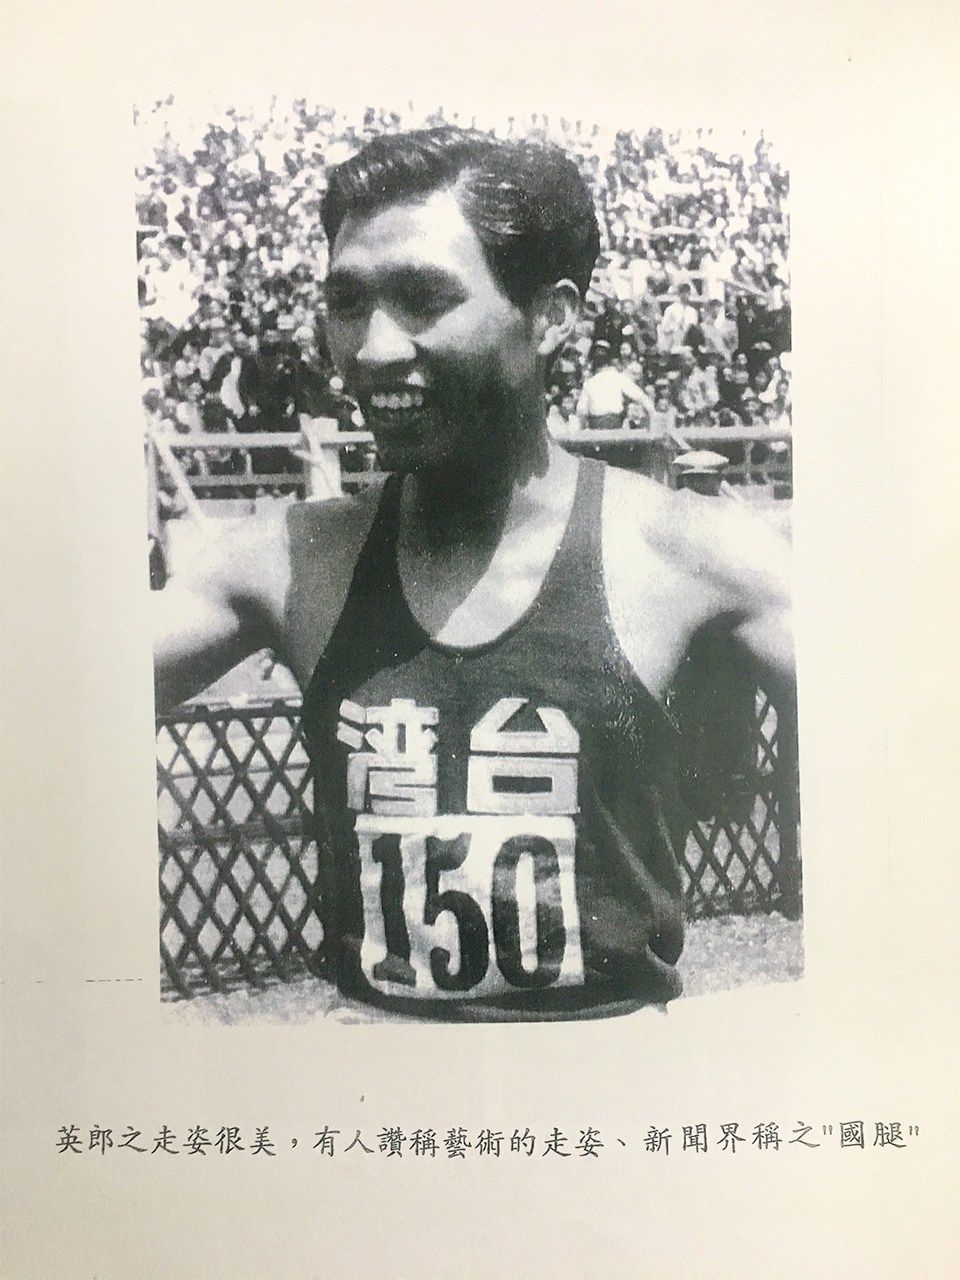 陳俊郎先生的哥哥・陳英郎先生，曾參加過倫敦奧運（筆者提供）